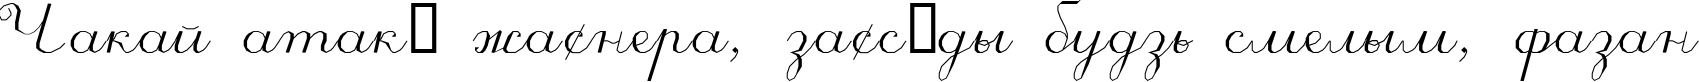 Пример написания шрифтом ScriptC текста на белорусском